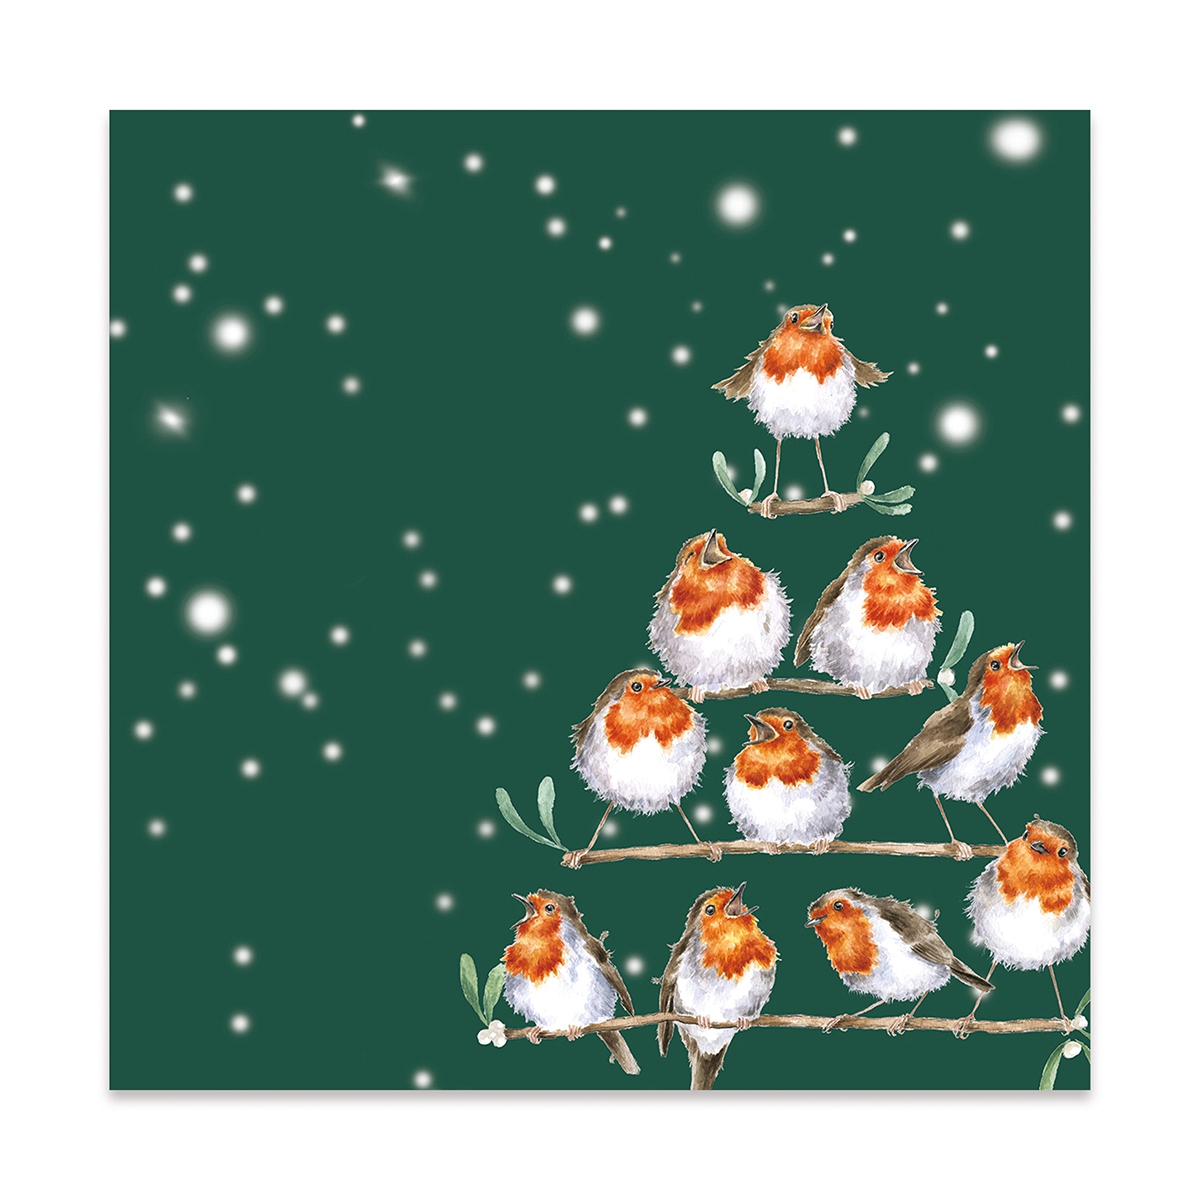 Vögel Weihnachtsserviette "Rockin' Robins" lunch size 33 x 33cm Wrendale Designs